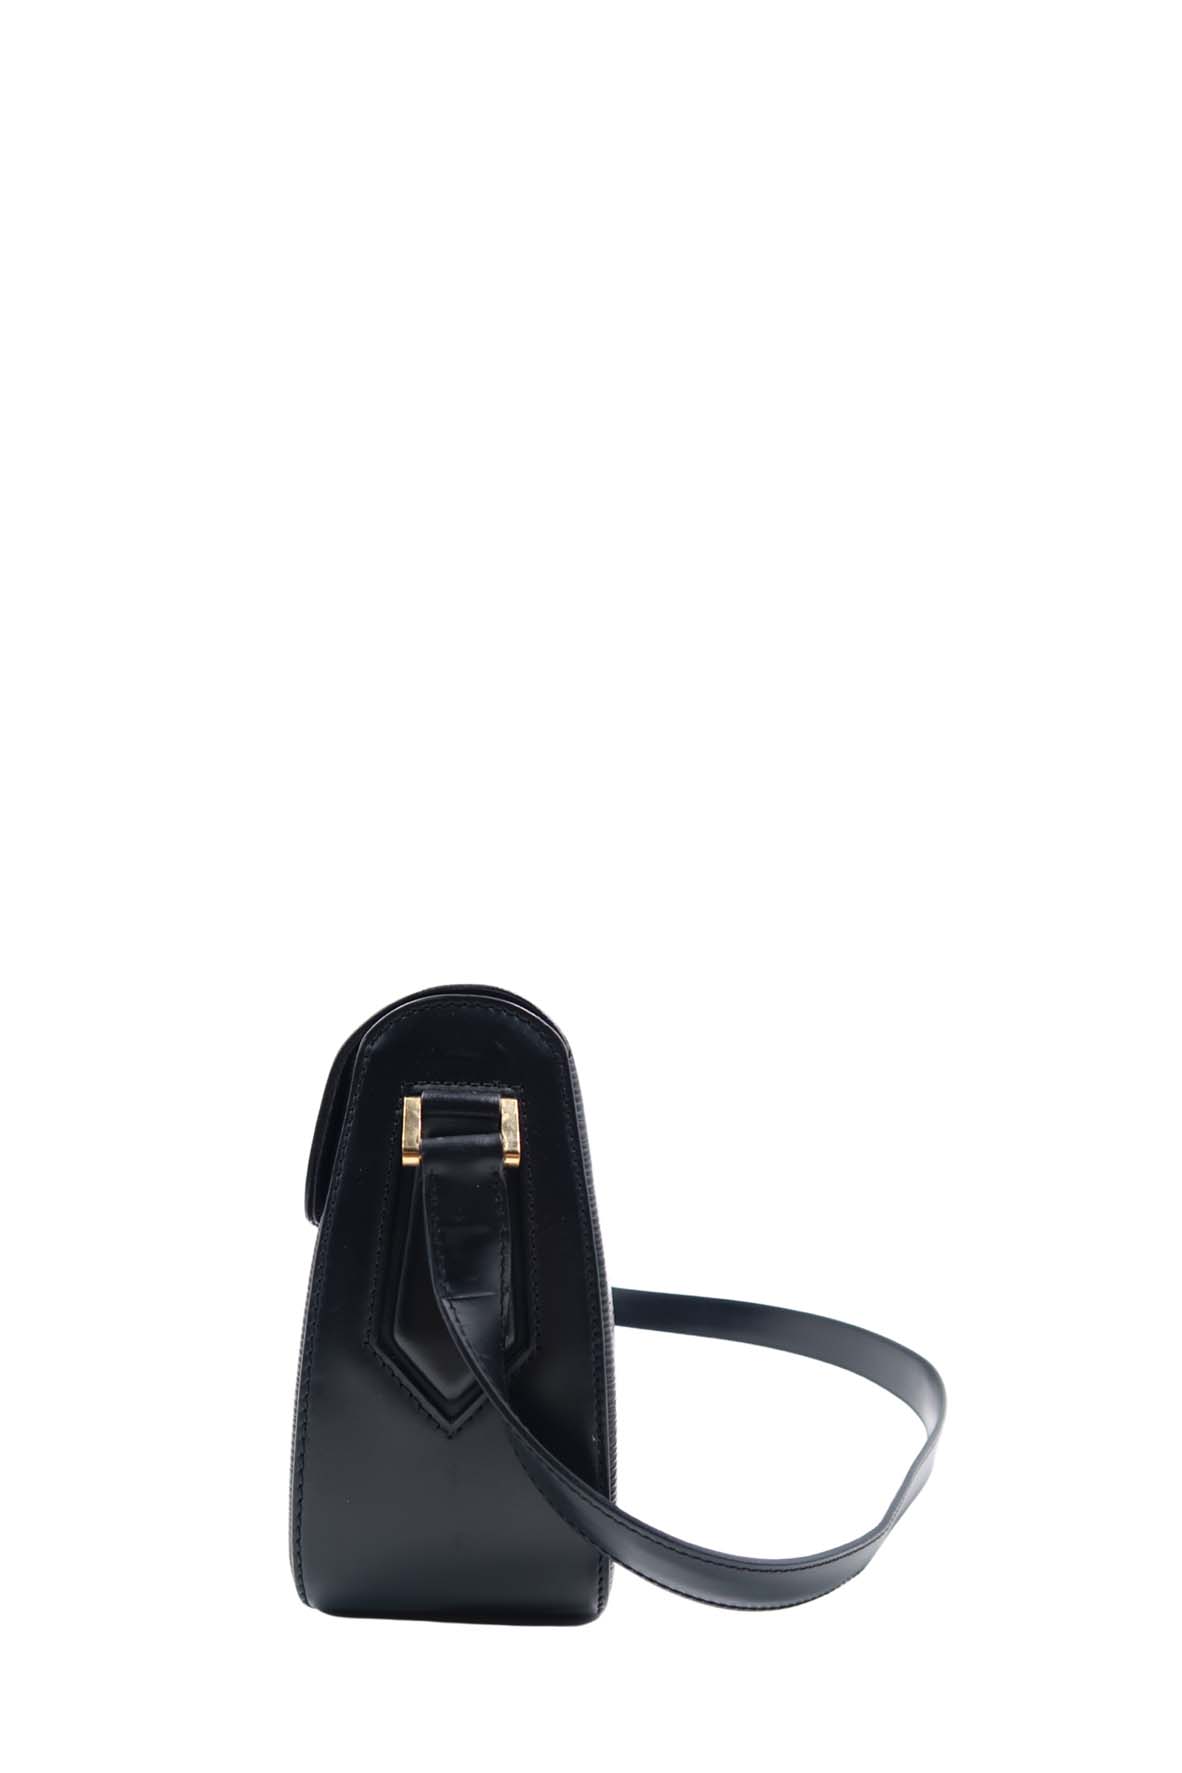 Louis Vuitton M52209 Vintage Black Epi Leather Buci shoulder Bag (SP0090) -  The Attic Place